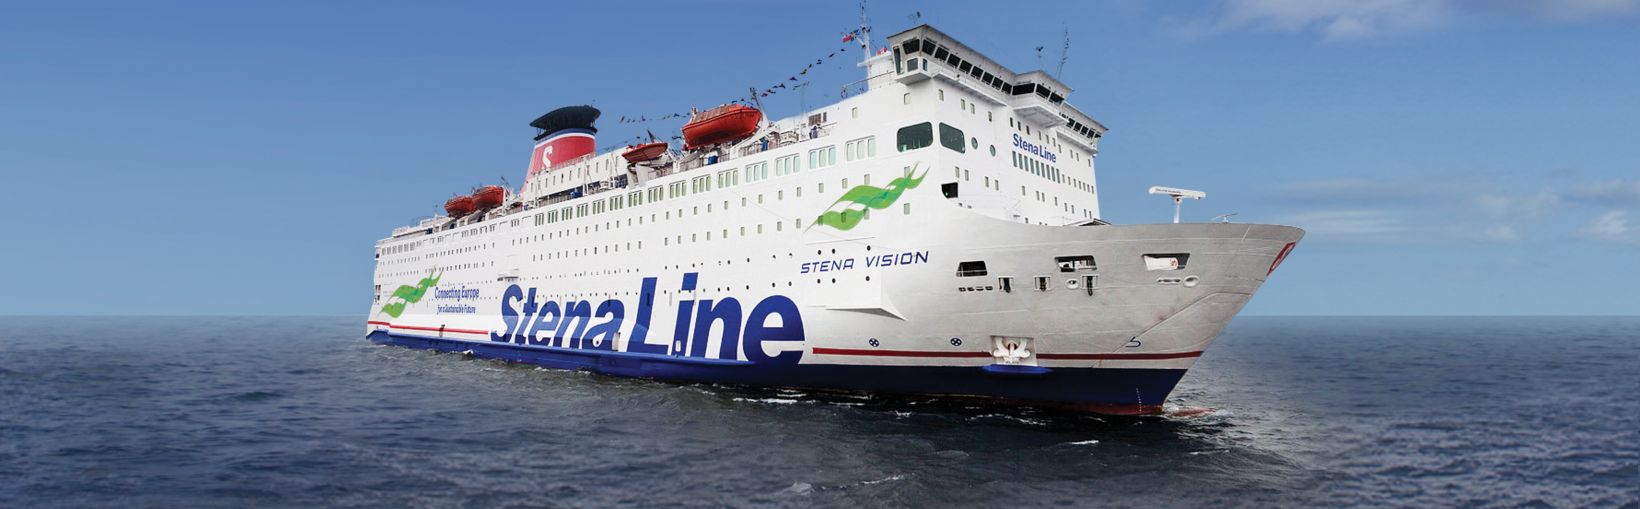 Stena Vision ferry en el mar